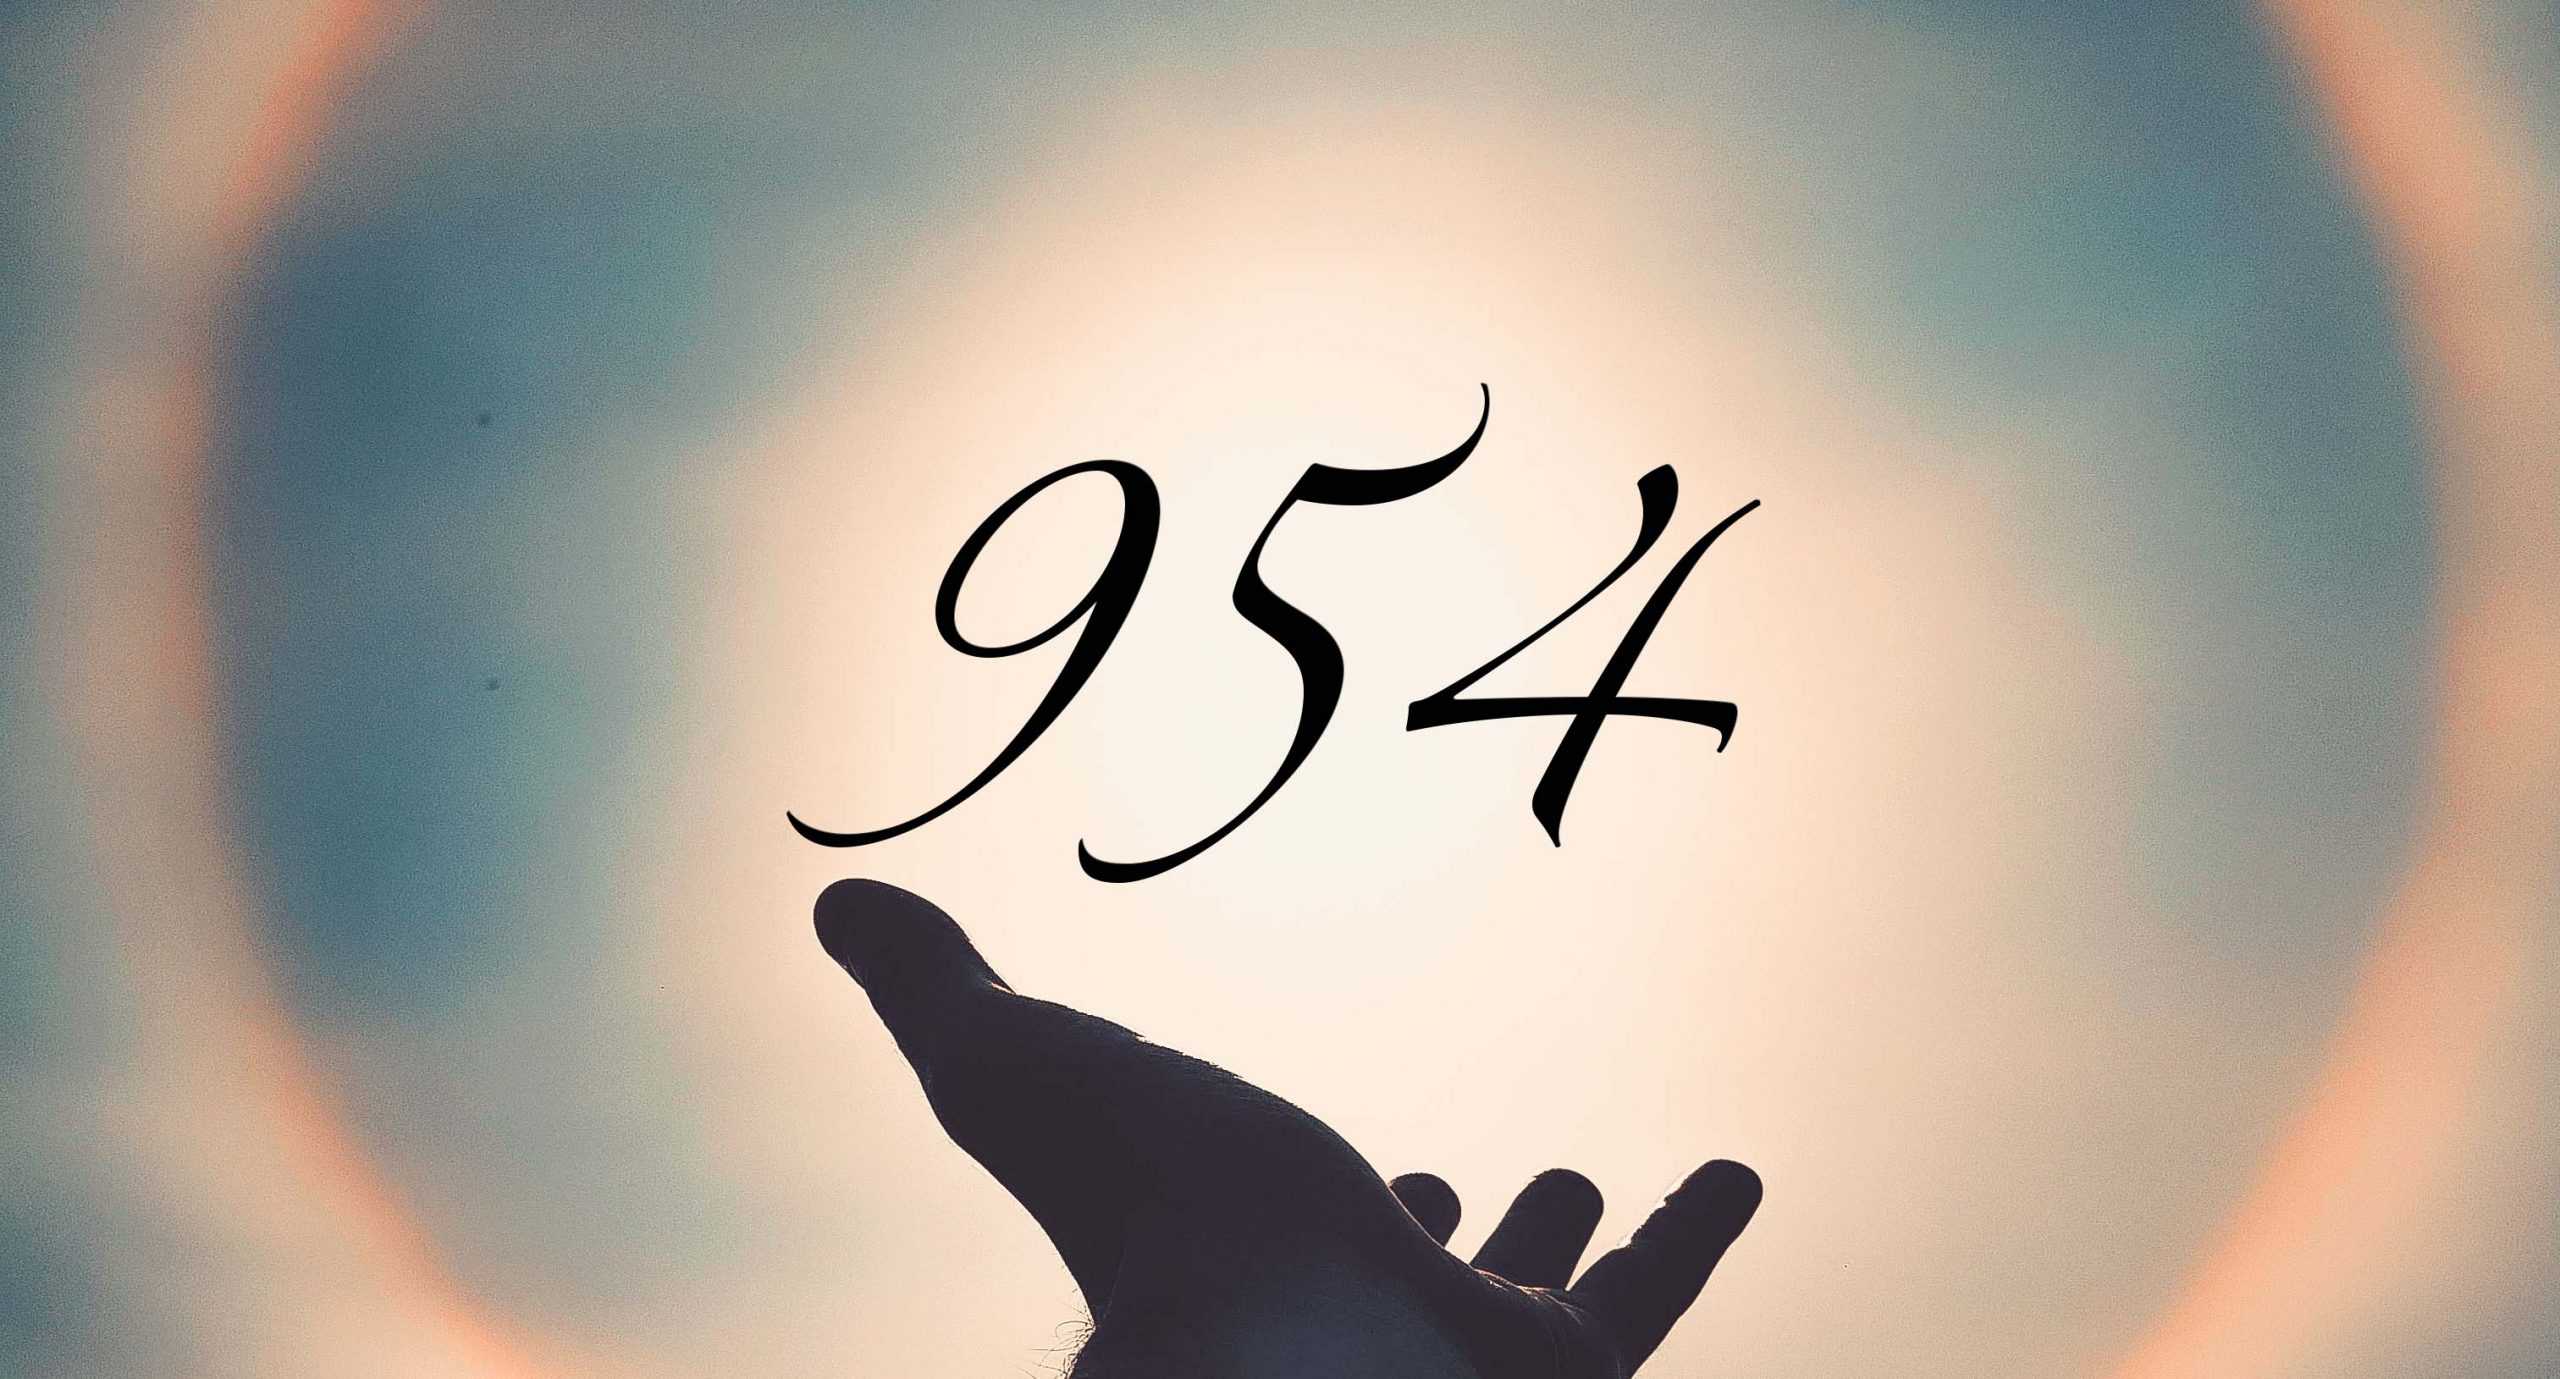 Signification du nombre 954